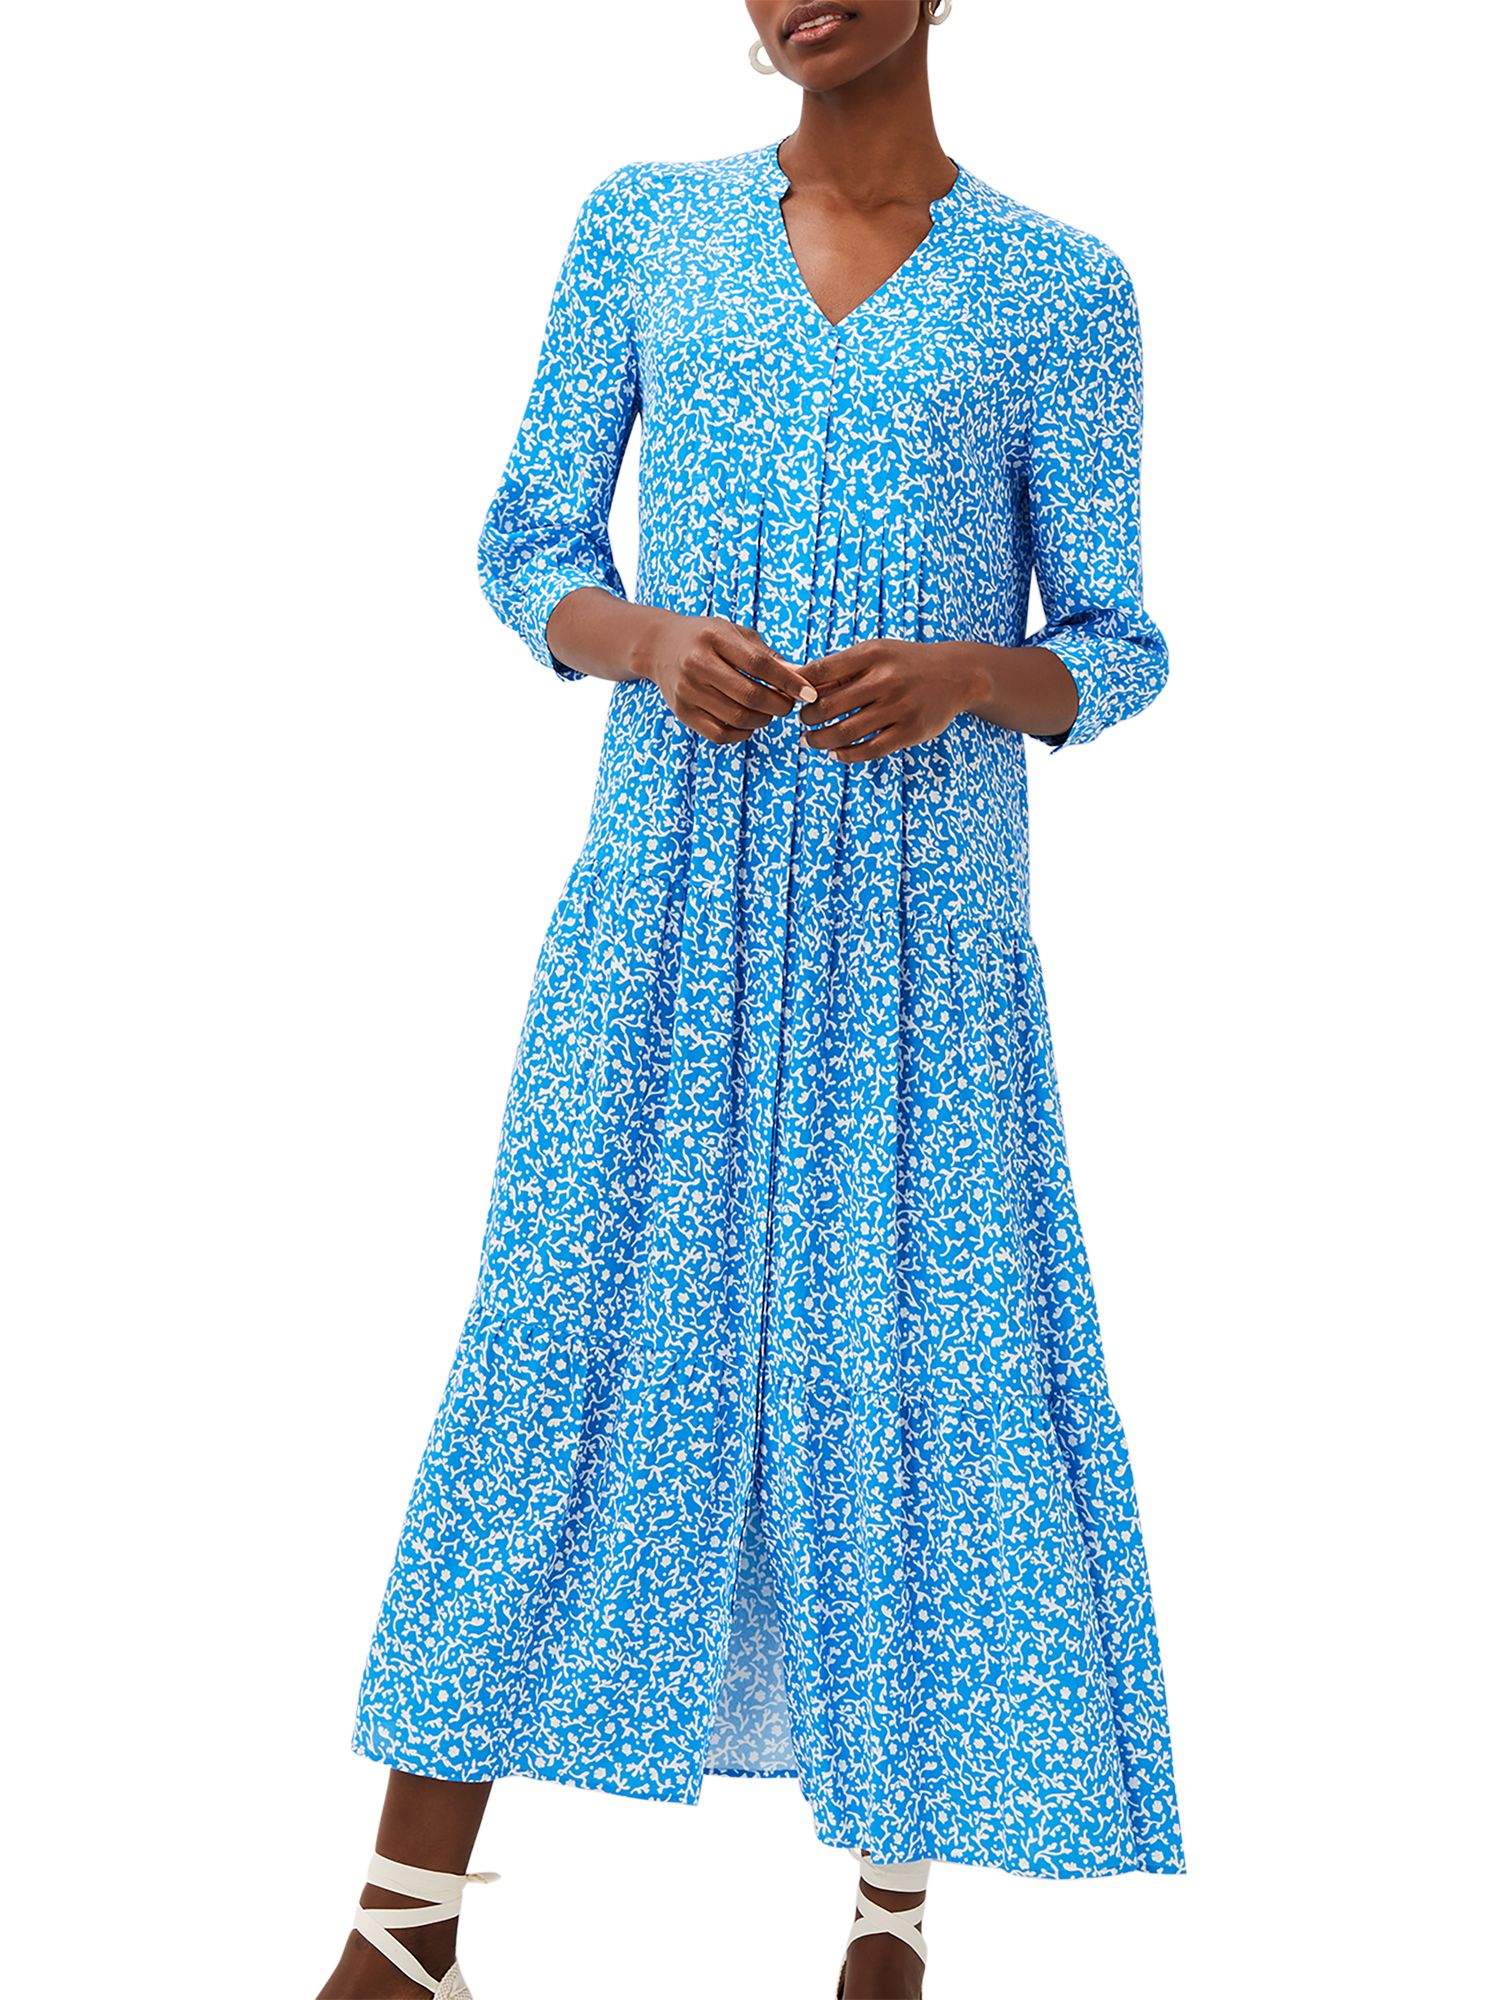 Phase Eight Penele Ditsy Print Maxi Dress, Blue/Ivory at John Lewis ...